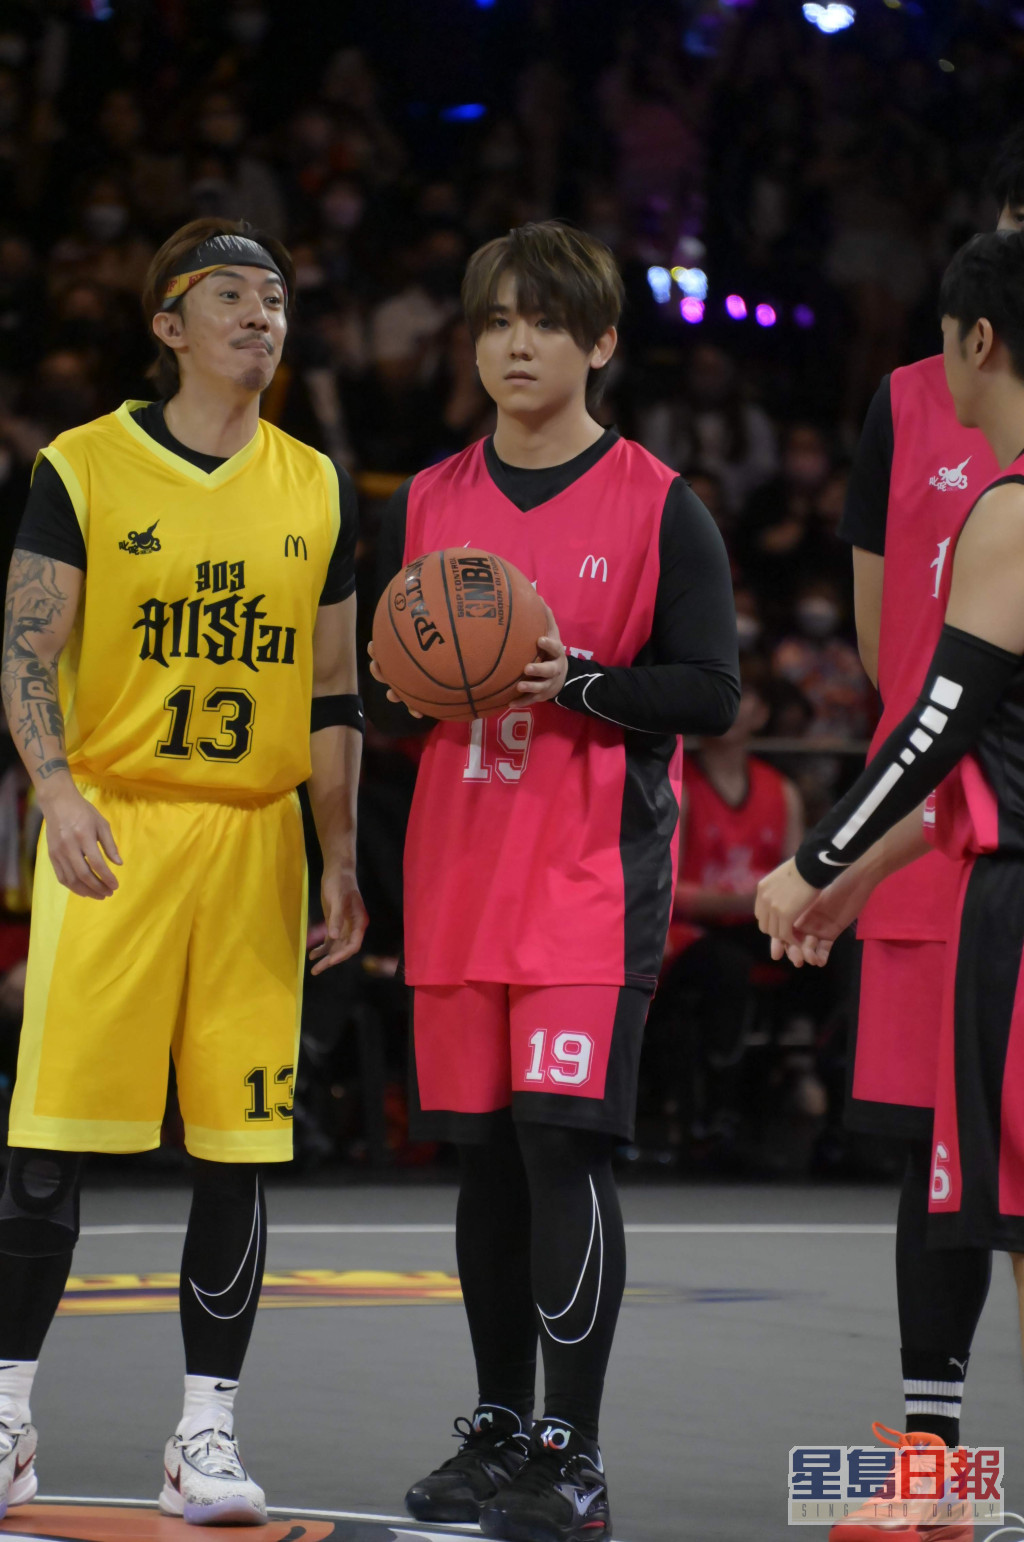 姜濤去年11月參加《903 AllStar 籃球賽》不慎扭傷右膝傷及舊患，導致膝關節十字韌帶撕裂。